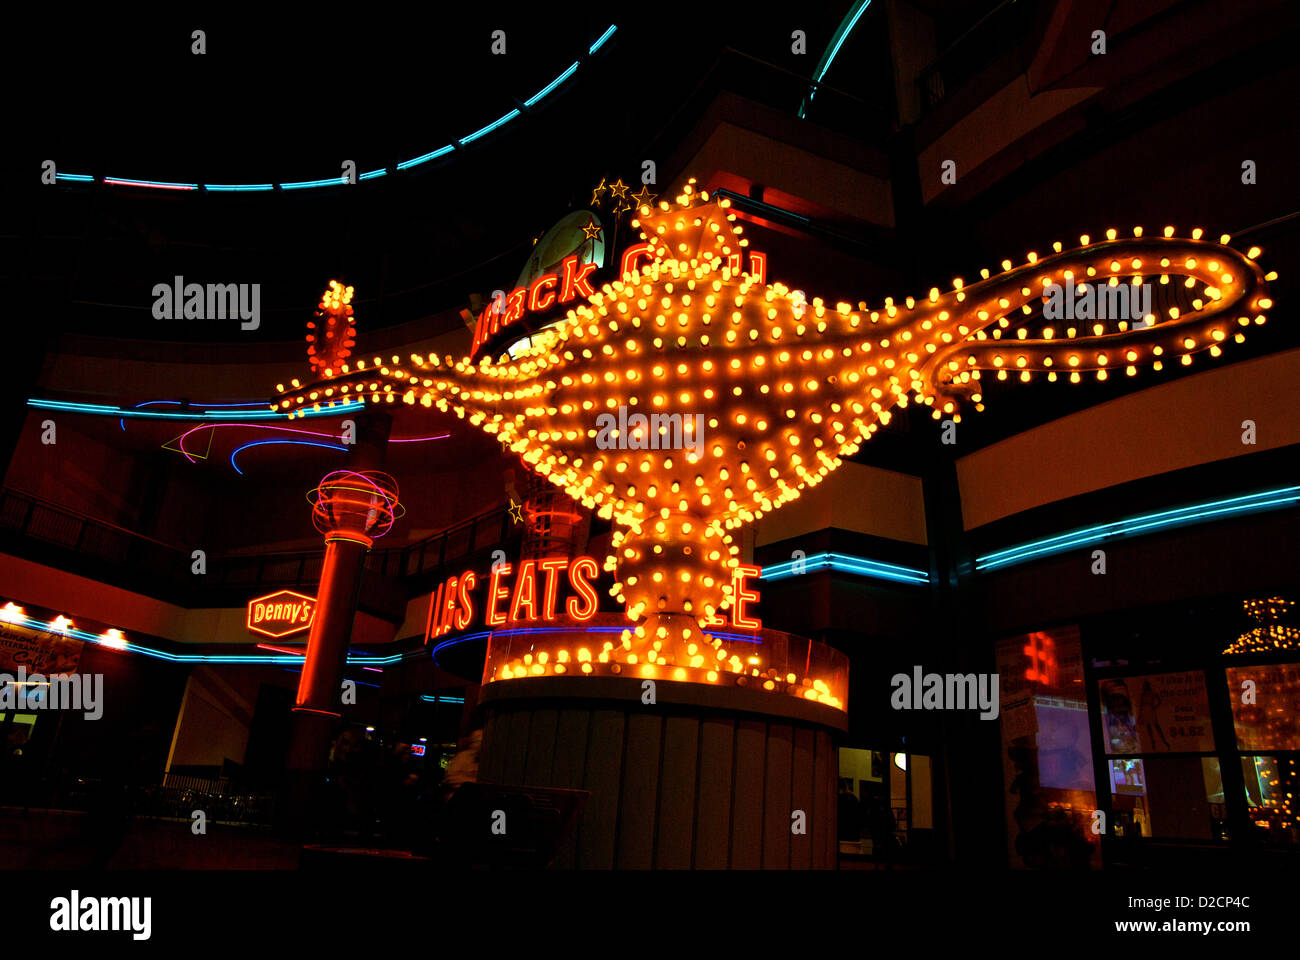 Restaurierte Glühbirne Lampe Zeichen Aladdin Hotel Fremont Street  Experience Innenstadt von Las Vegas in der Nacht geborgen Stockfotografie -  Alamy